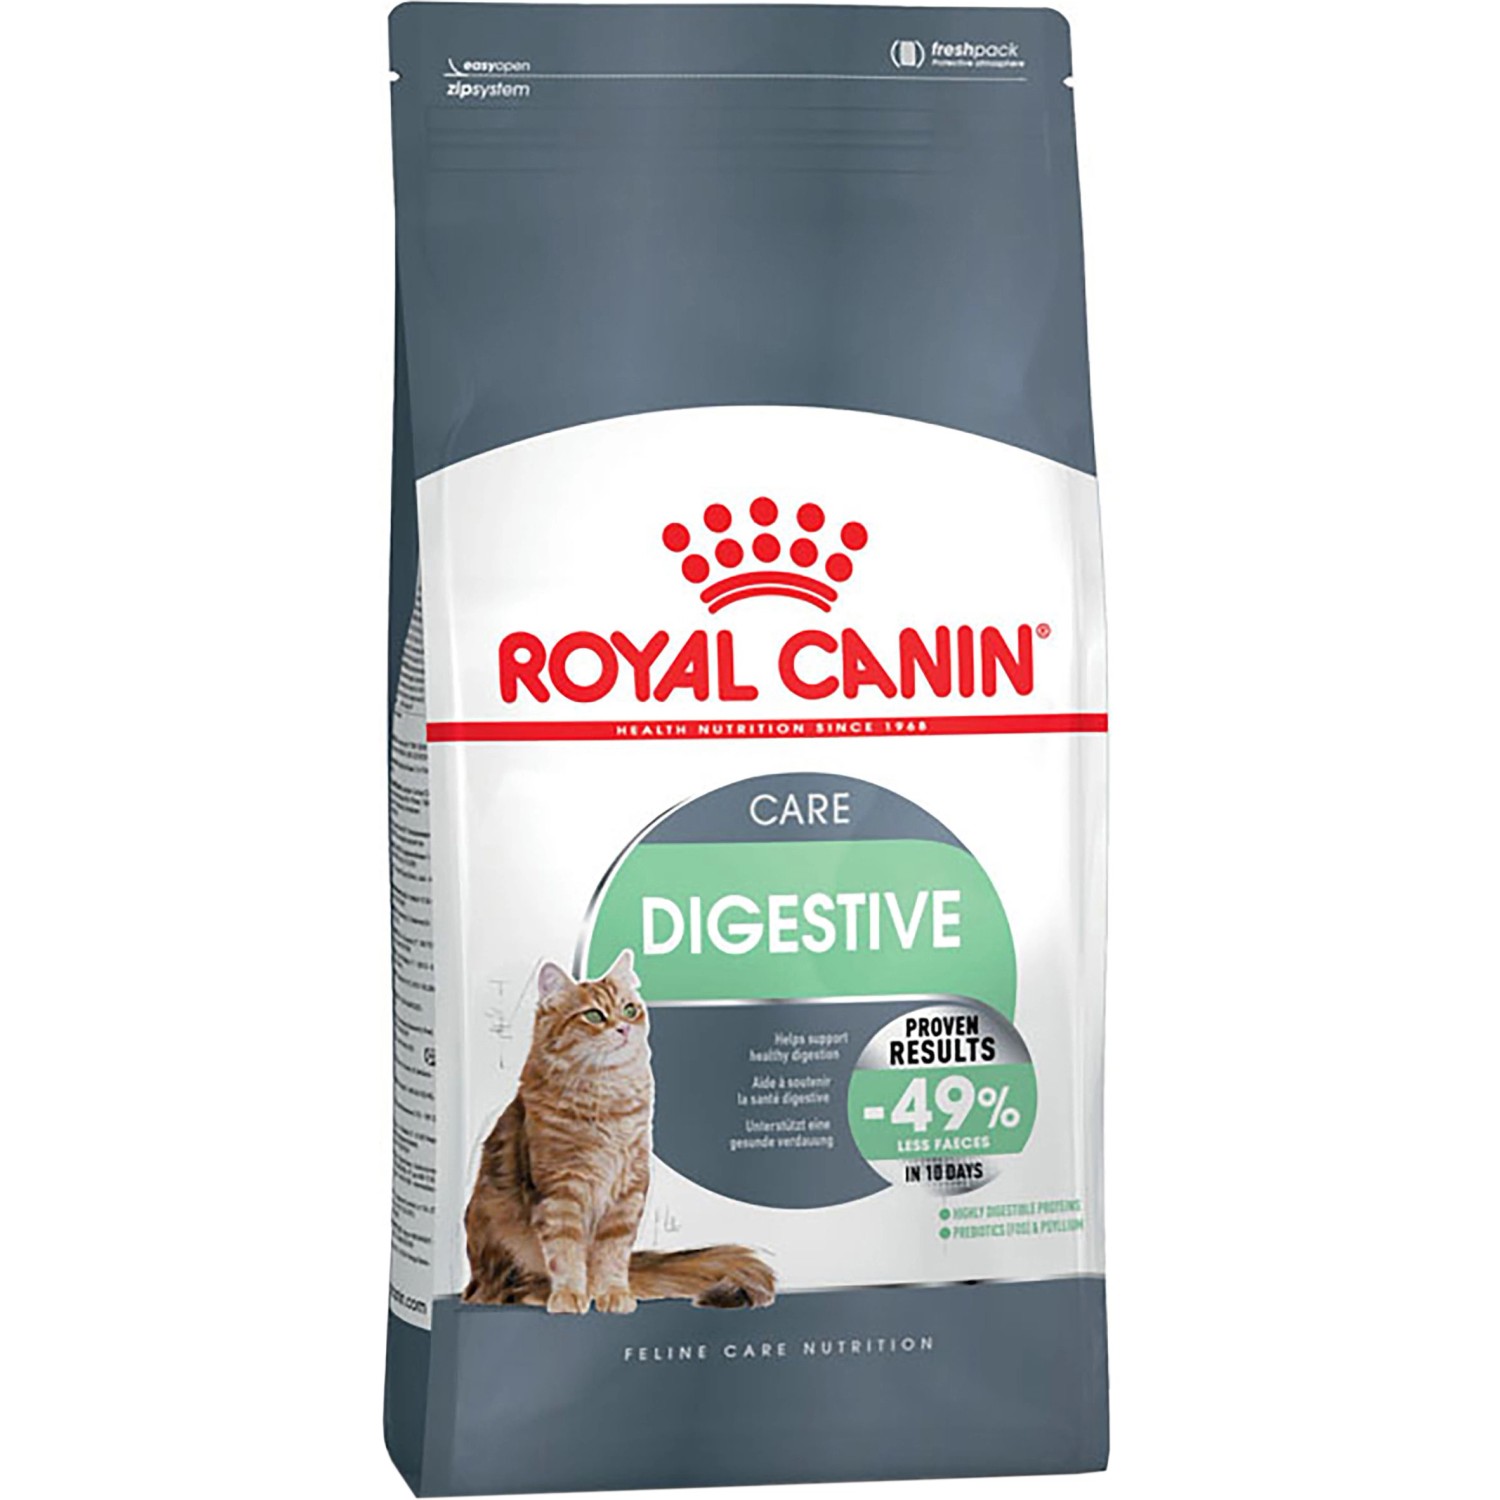 Royal Canin Katzen-Trockenfutter Digestive Care für empfindliche Verdauung 400 g